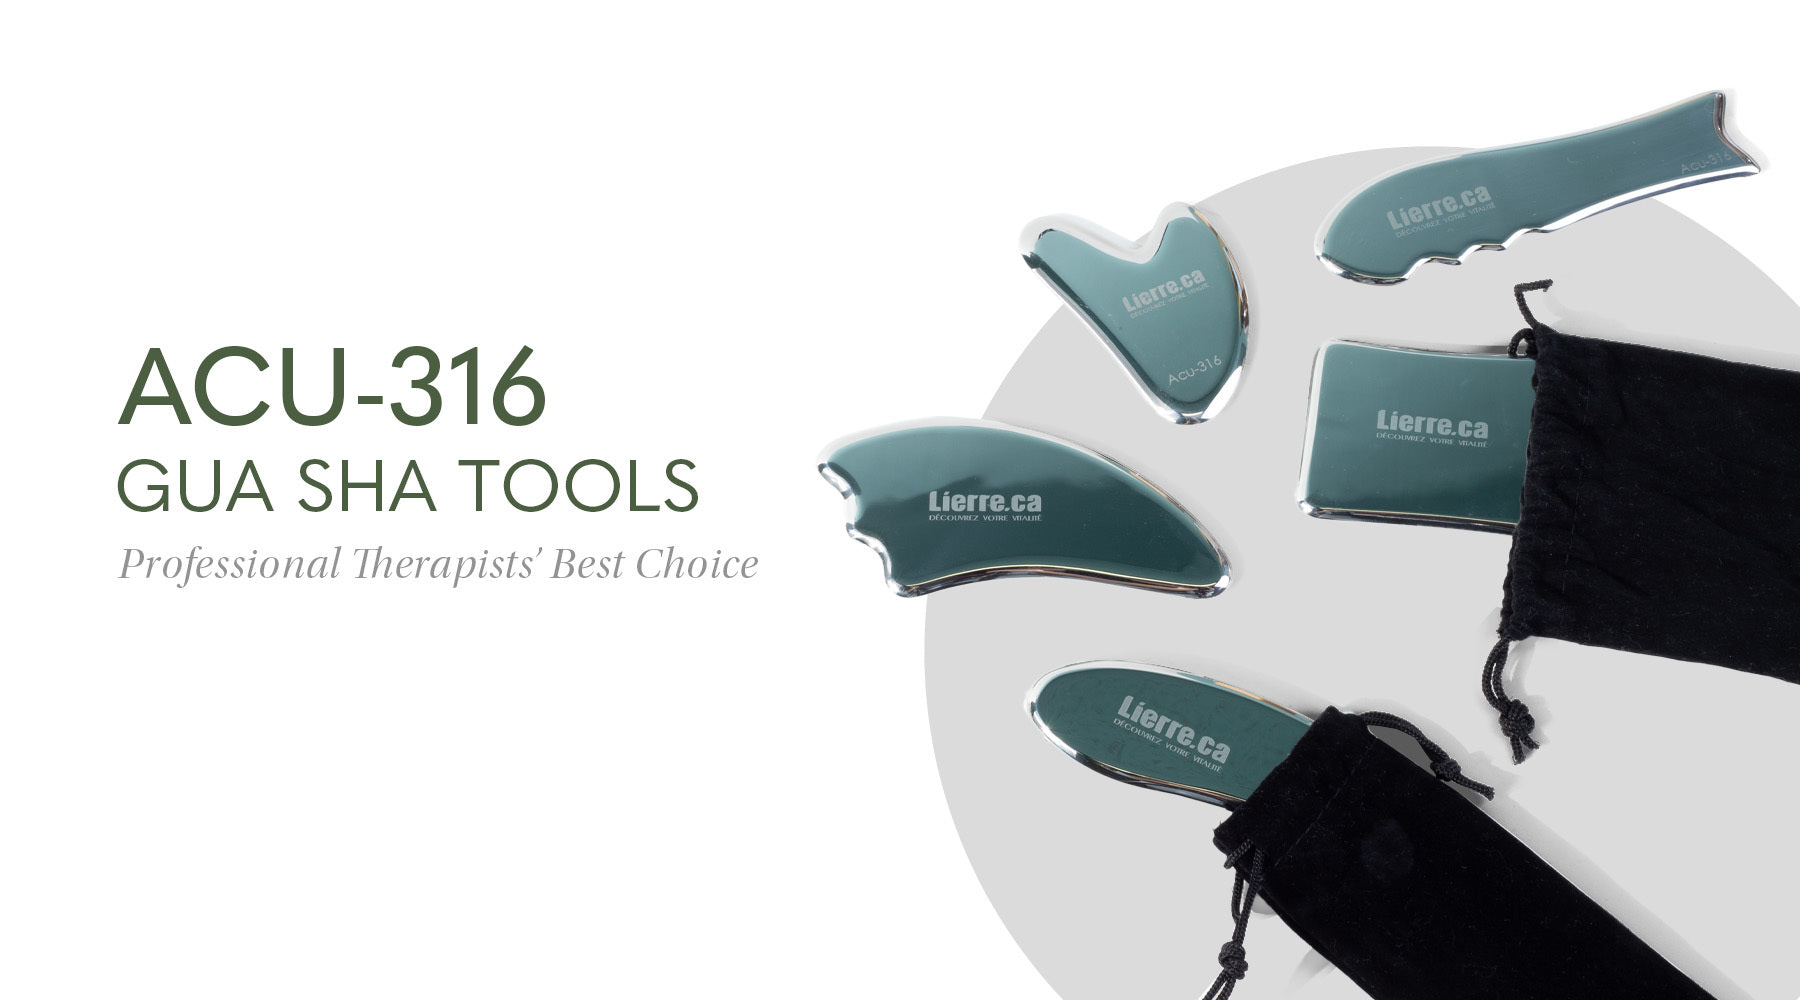 Acu-316 Gua Sha Tools: the Best Tools for Professionals